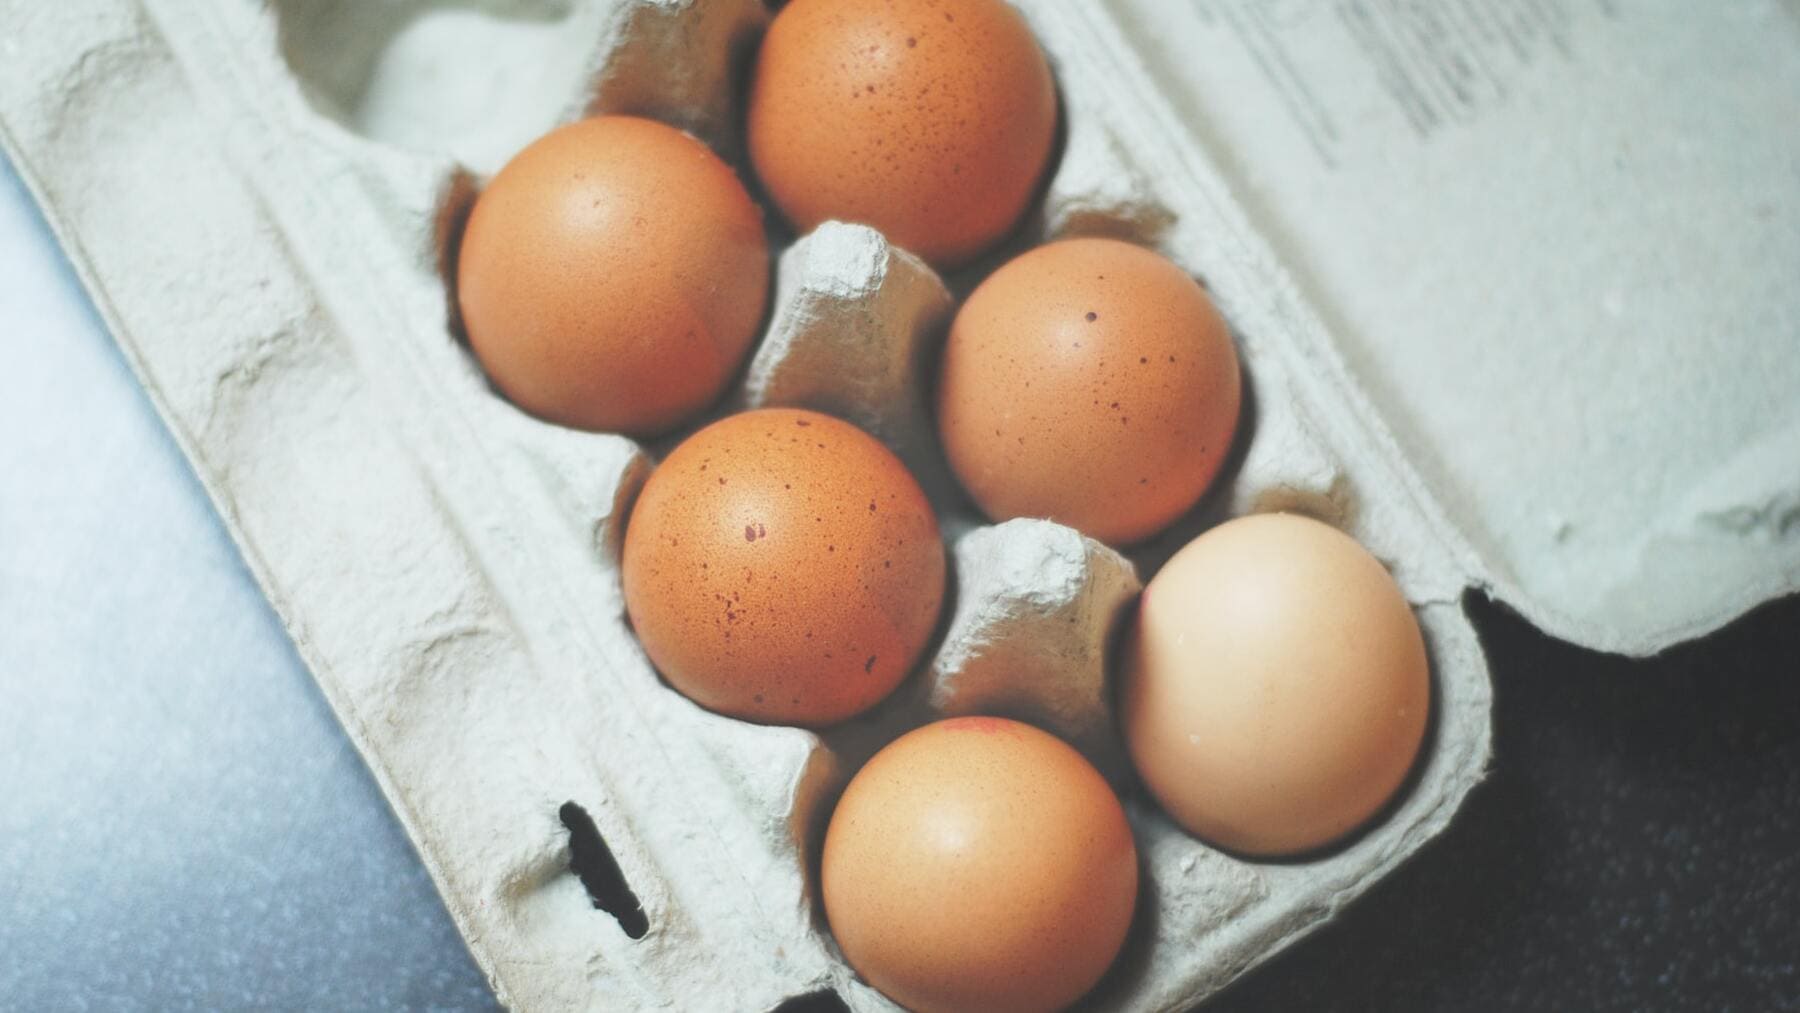 Qué significa el número impreso en los huevos y cuál deberías comprar